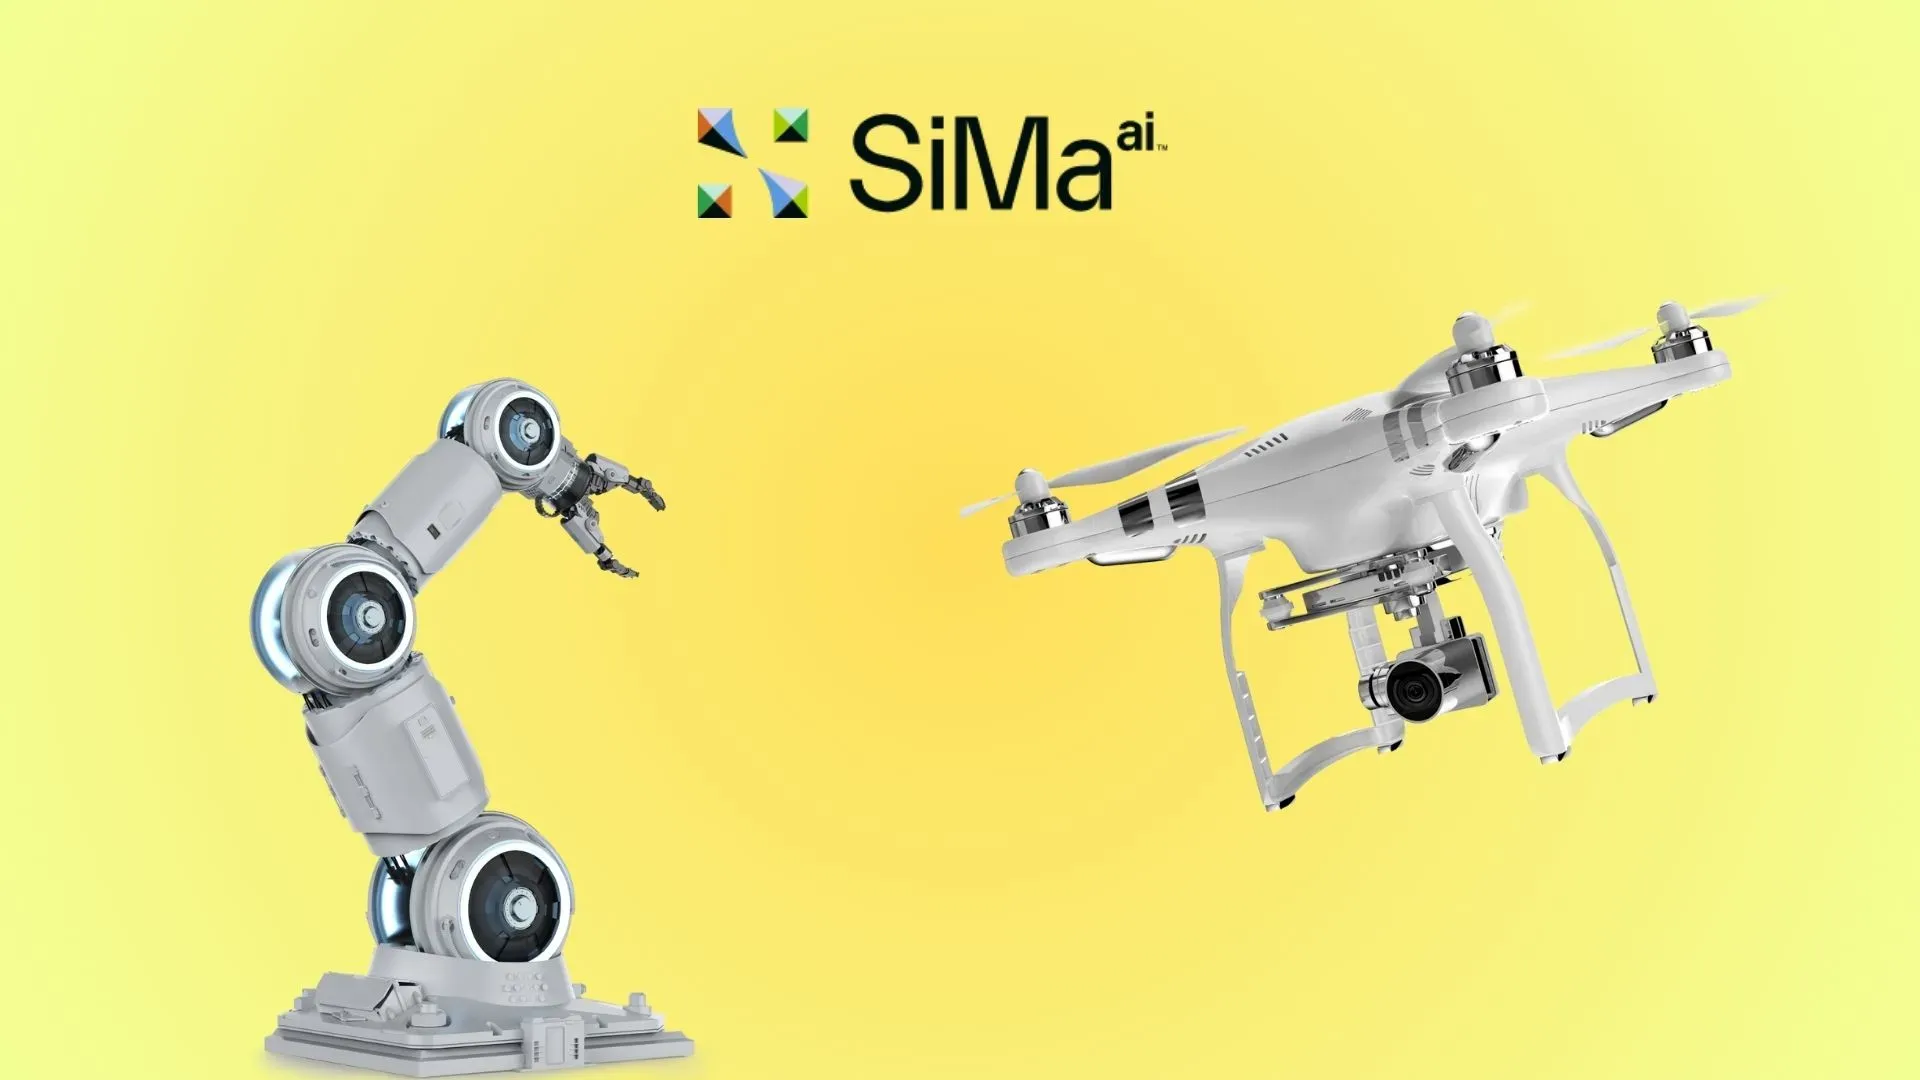 IDC Awarded SiMa.ai As Innovator For Edge AI/ML Technologies